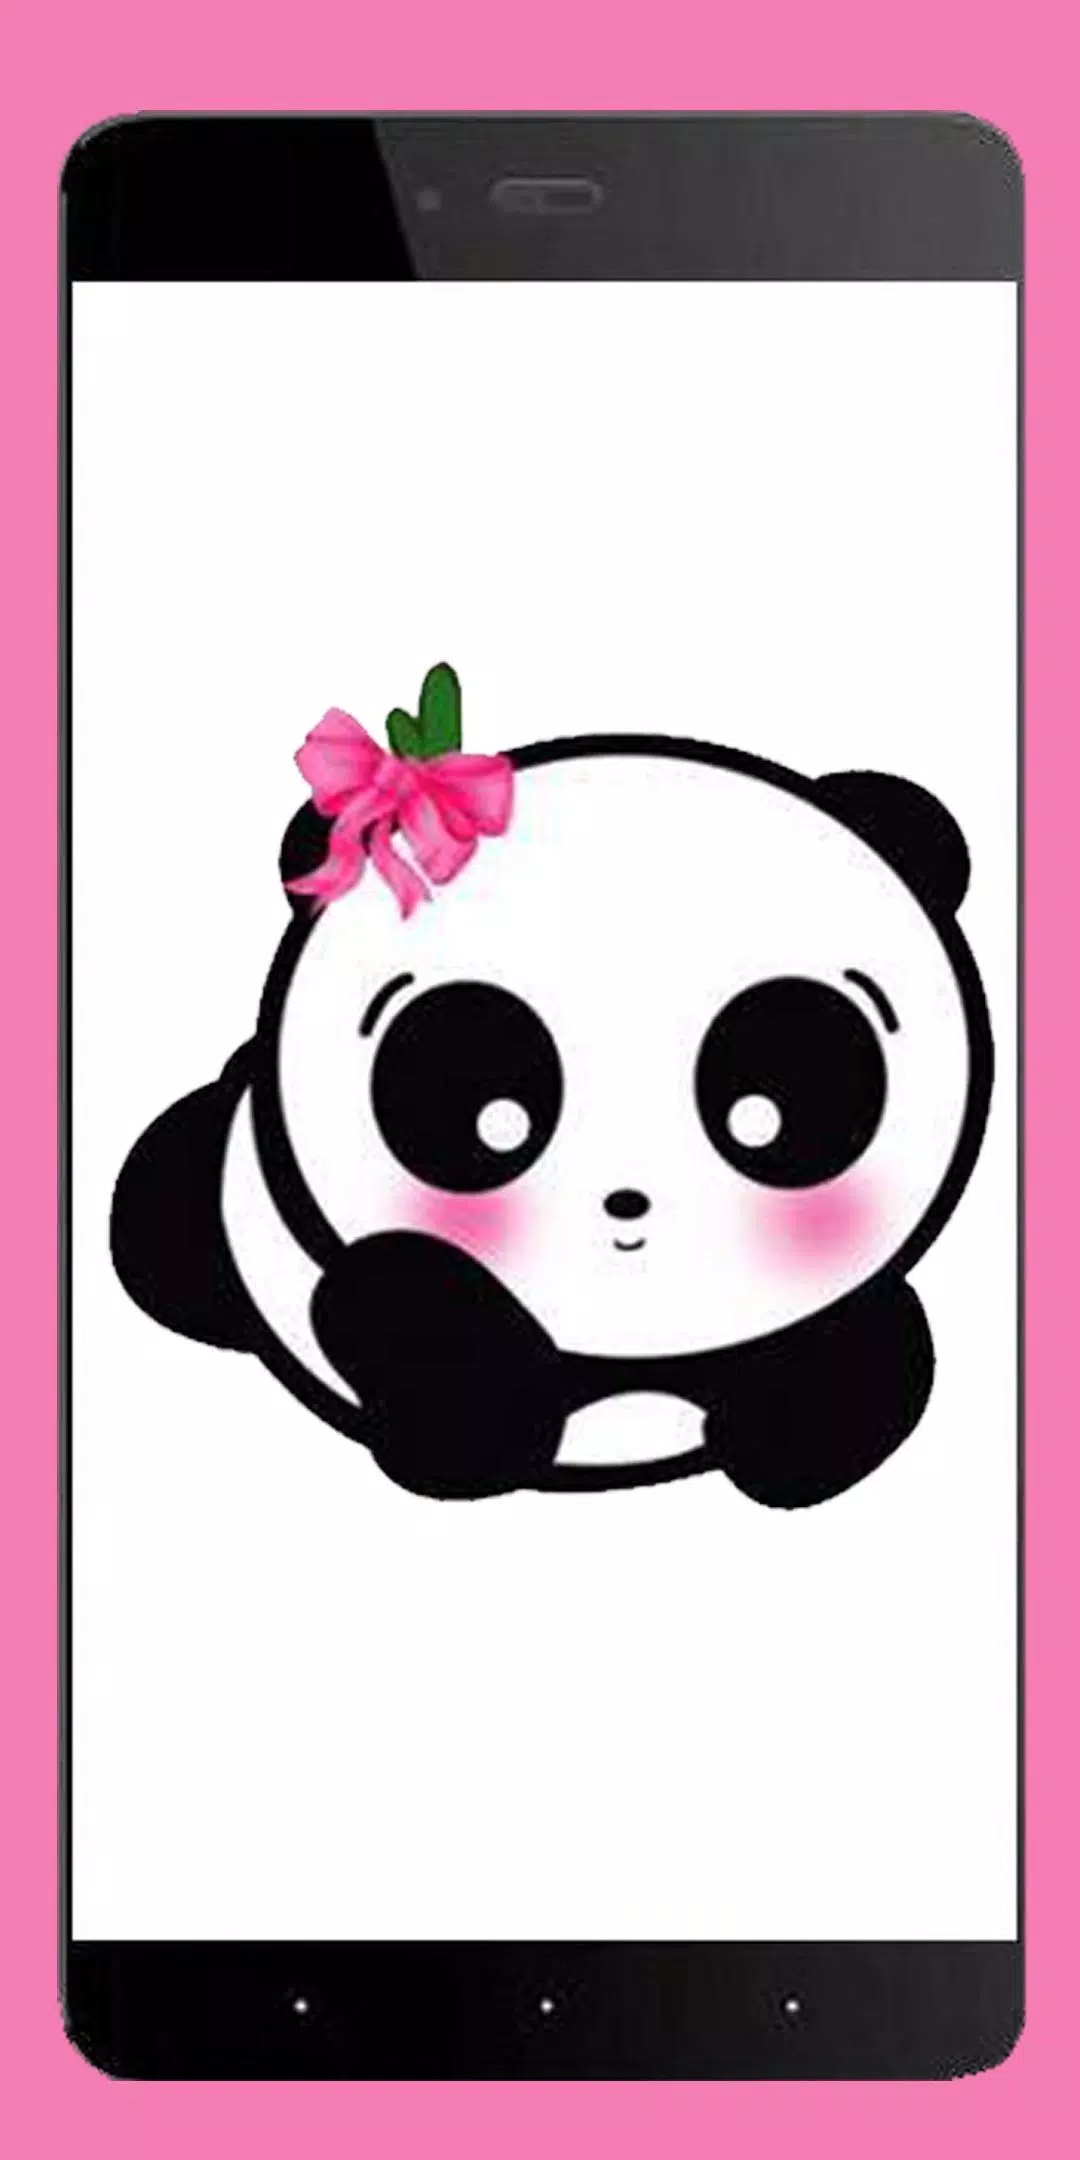 Cute Panda Wallpaper HD: Gấu trúc đáng yêu, dễ thương sẽ khiến bạn thích thú và hạnh phúc. Với bức ảnh Cute Panda Wallpaper HD, bạn sẽ được chiêm ngưỡng những hình ảnh đáng yêu và đầy màu sắc về loài gấu trúc. Hãy cùng xem bức ảnh này để được tận hưởng những giây phút thư giãn và vui vẻ.